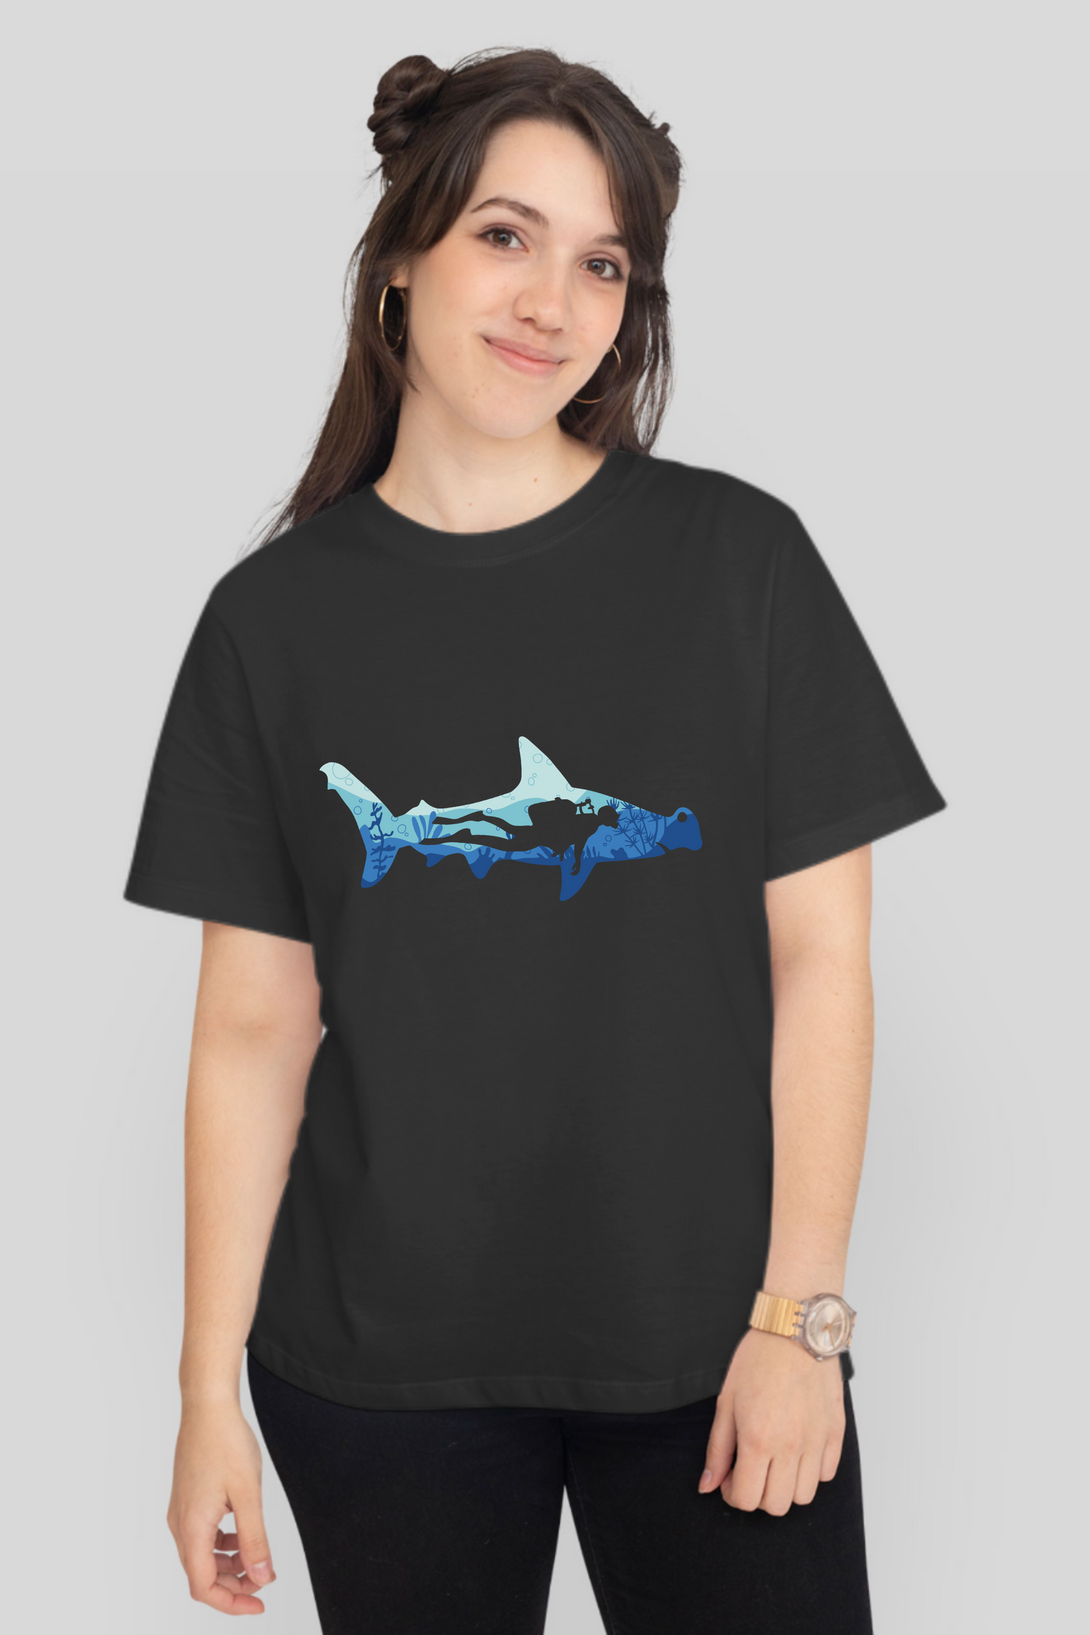 Hammerhead Shark Dive Printed T-Shirt For Women - WowWaves - 10